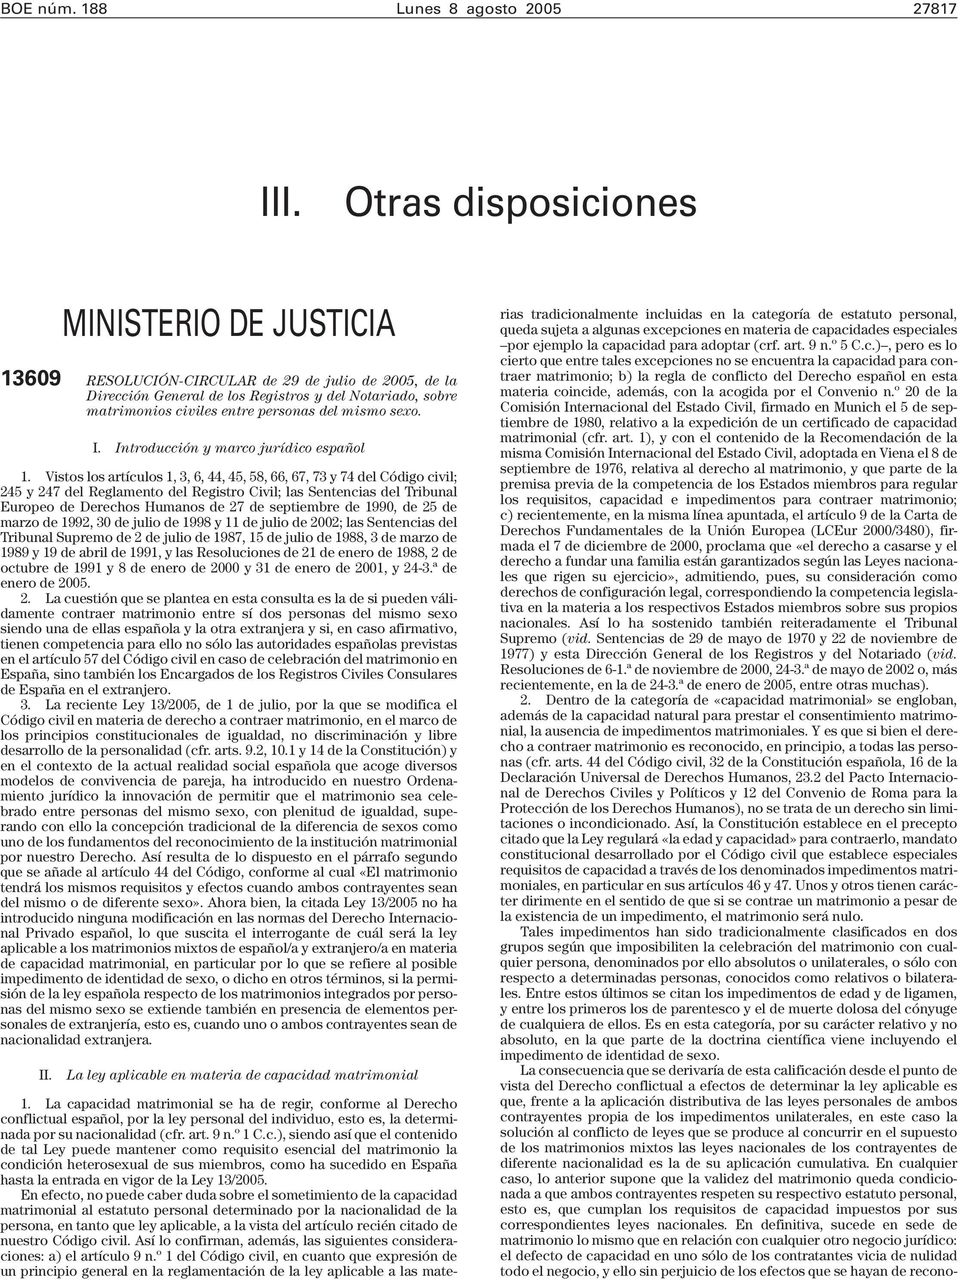 mismo sexo. I. Introducción y marco jurídico español 1.